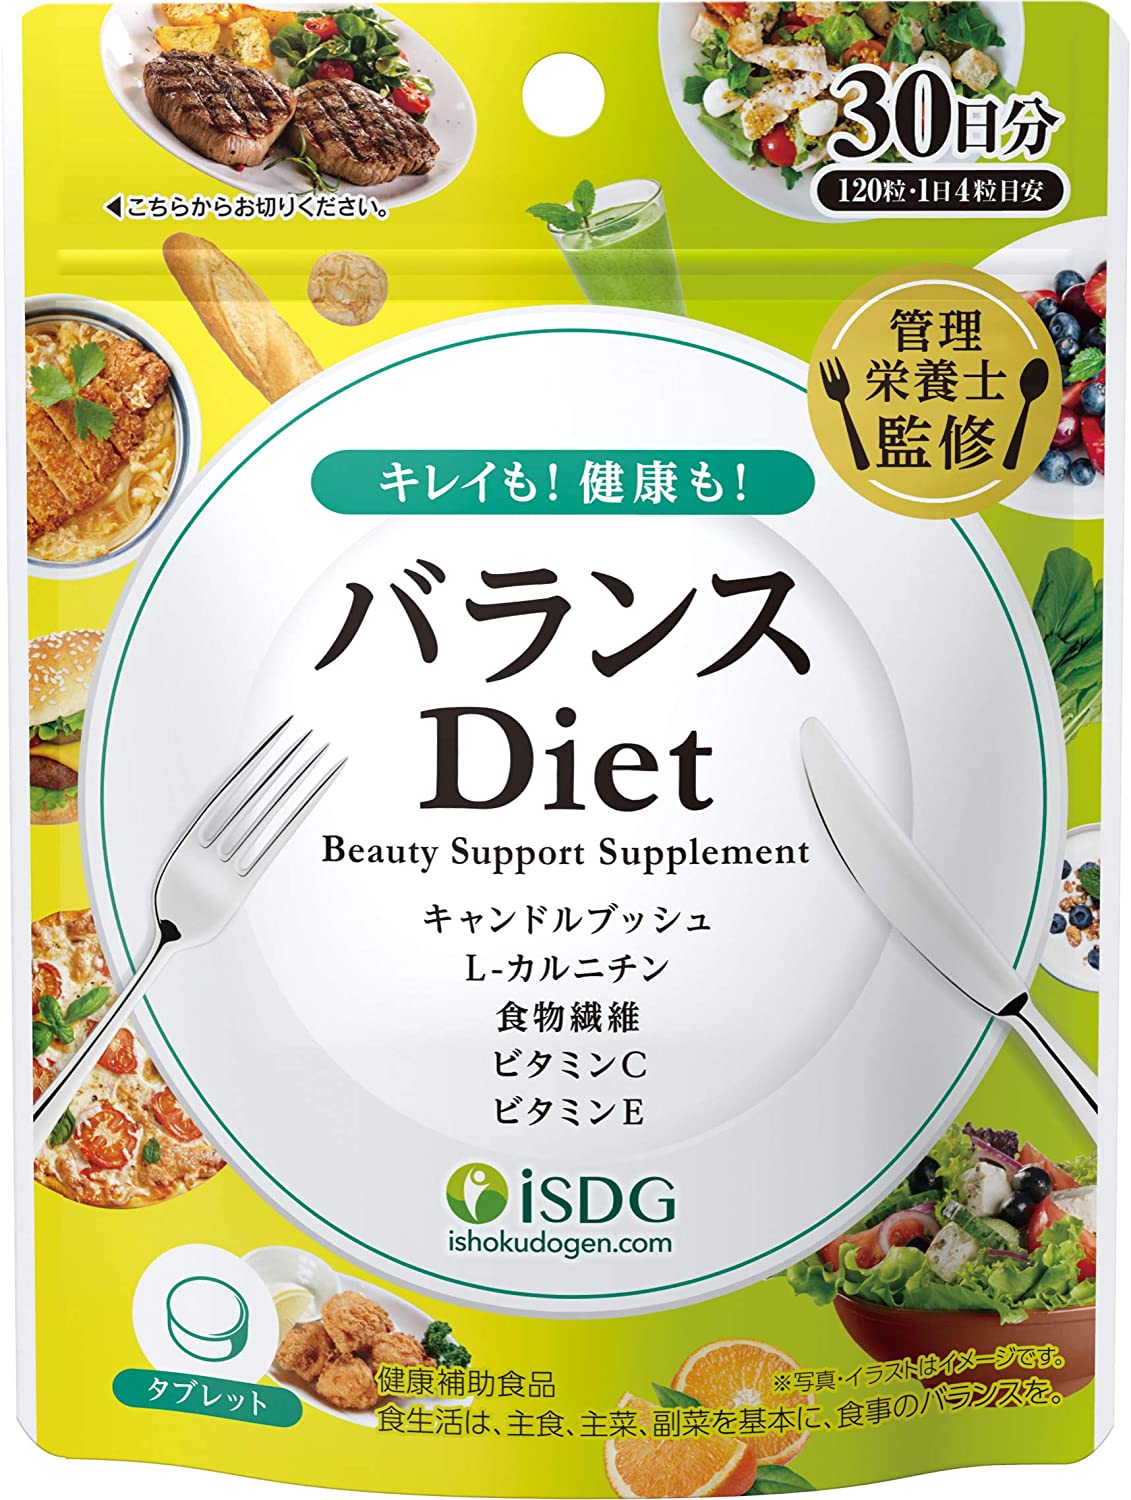 Комплекс для поддержания питательного баланса во время диеты Balance Diet ISDG, 120 шт